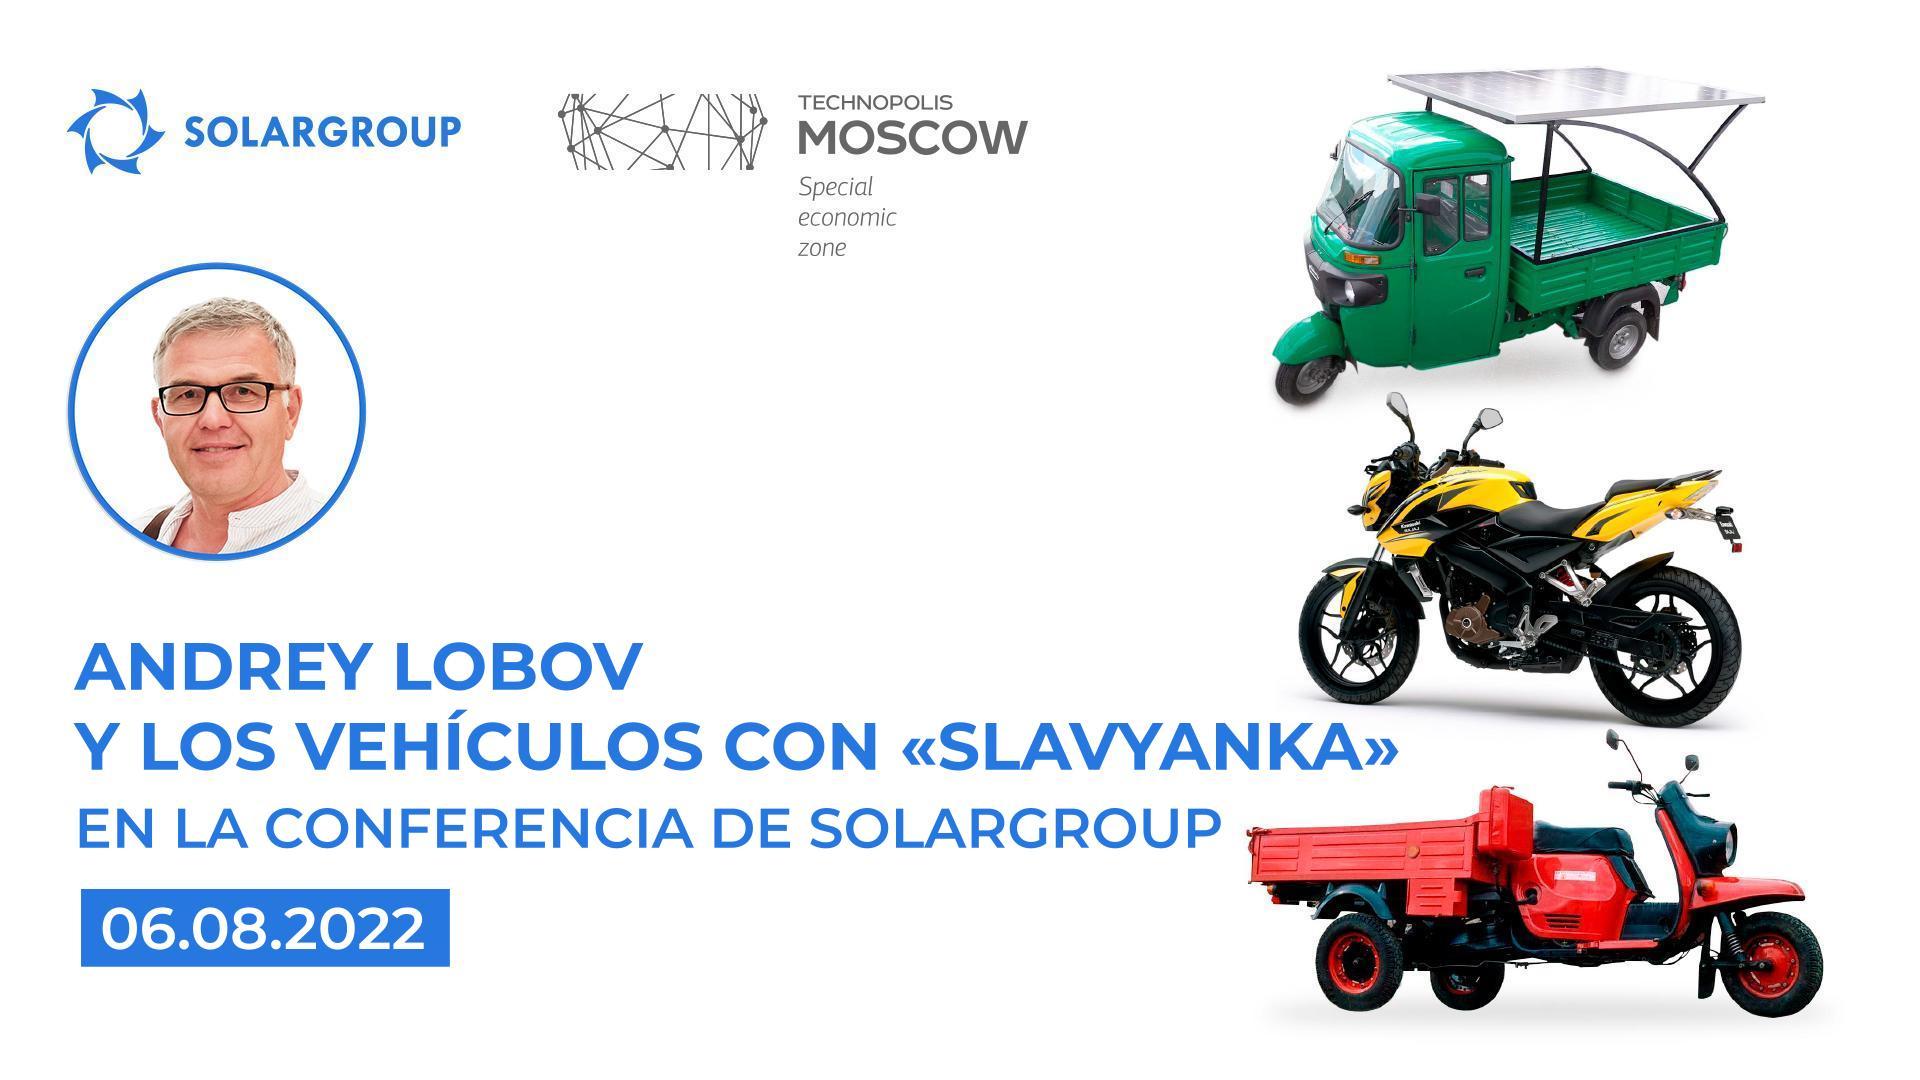 Andrey Lobov y el showroom de vehículos con "Slavyanka"